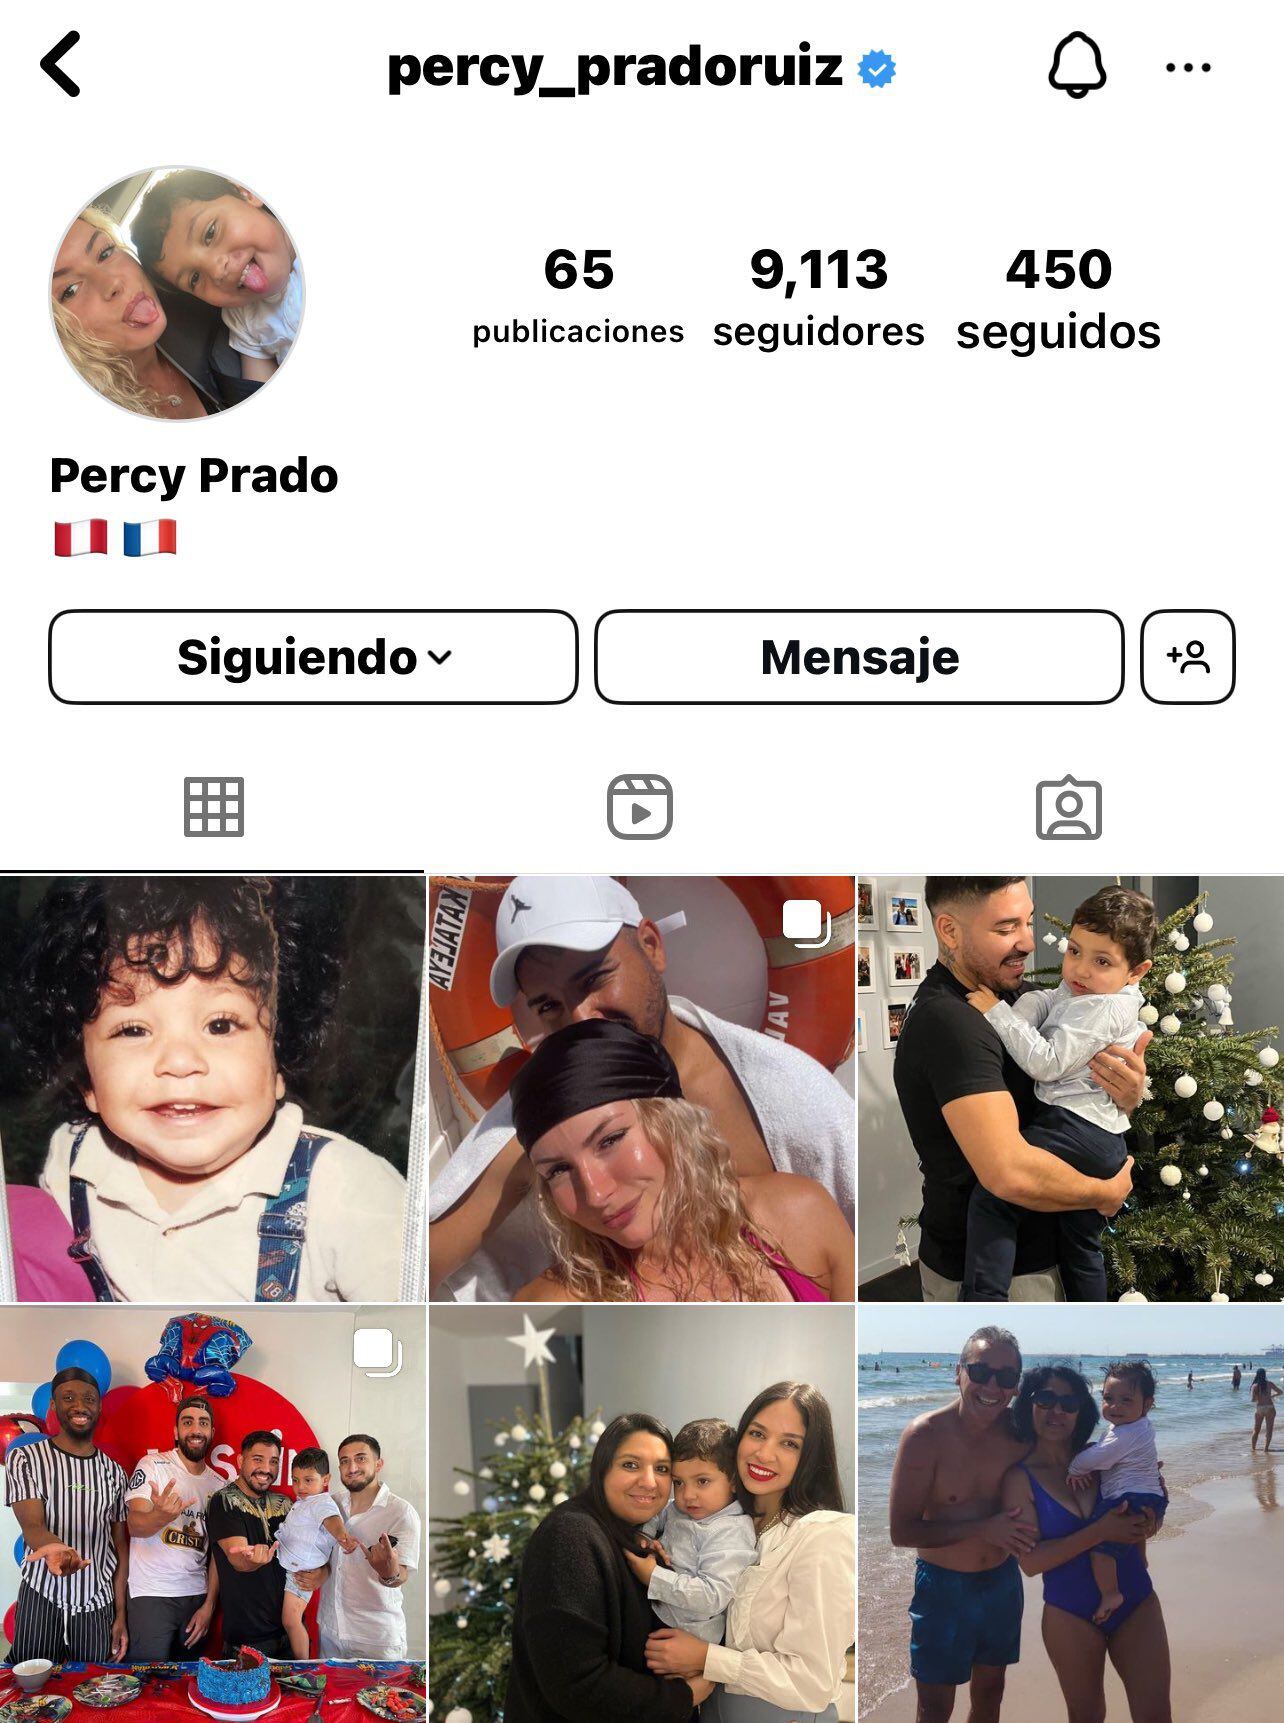 Percy Prado dejó mensajes inquietantes en su cuenta de IG. - Crédito: percy_pradoruiz